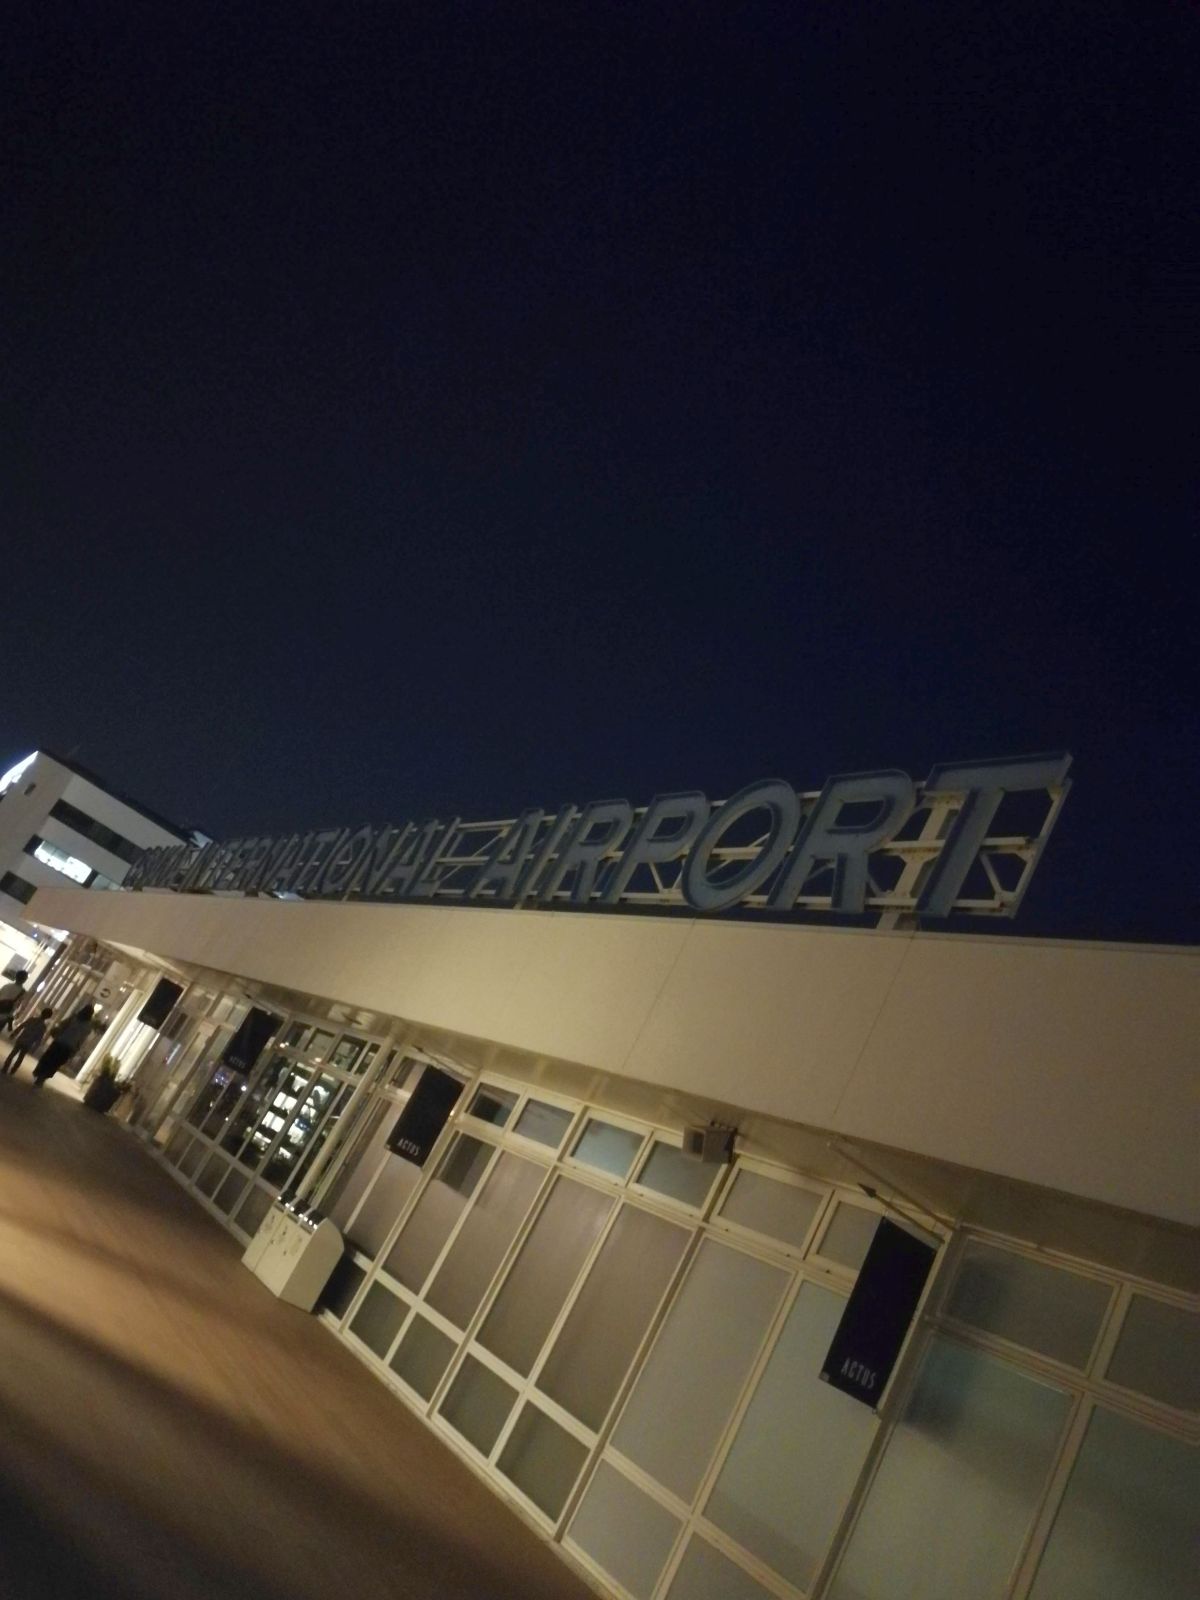 OSAKA INTERNATIONAL AIRPORT